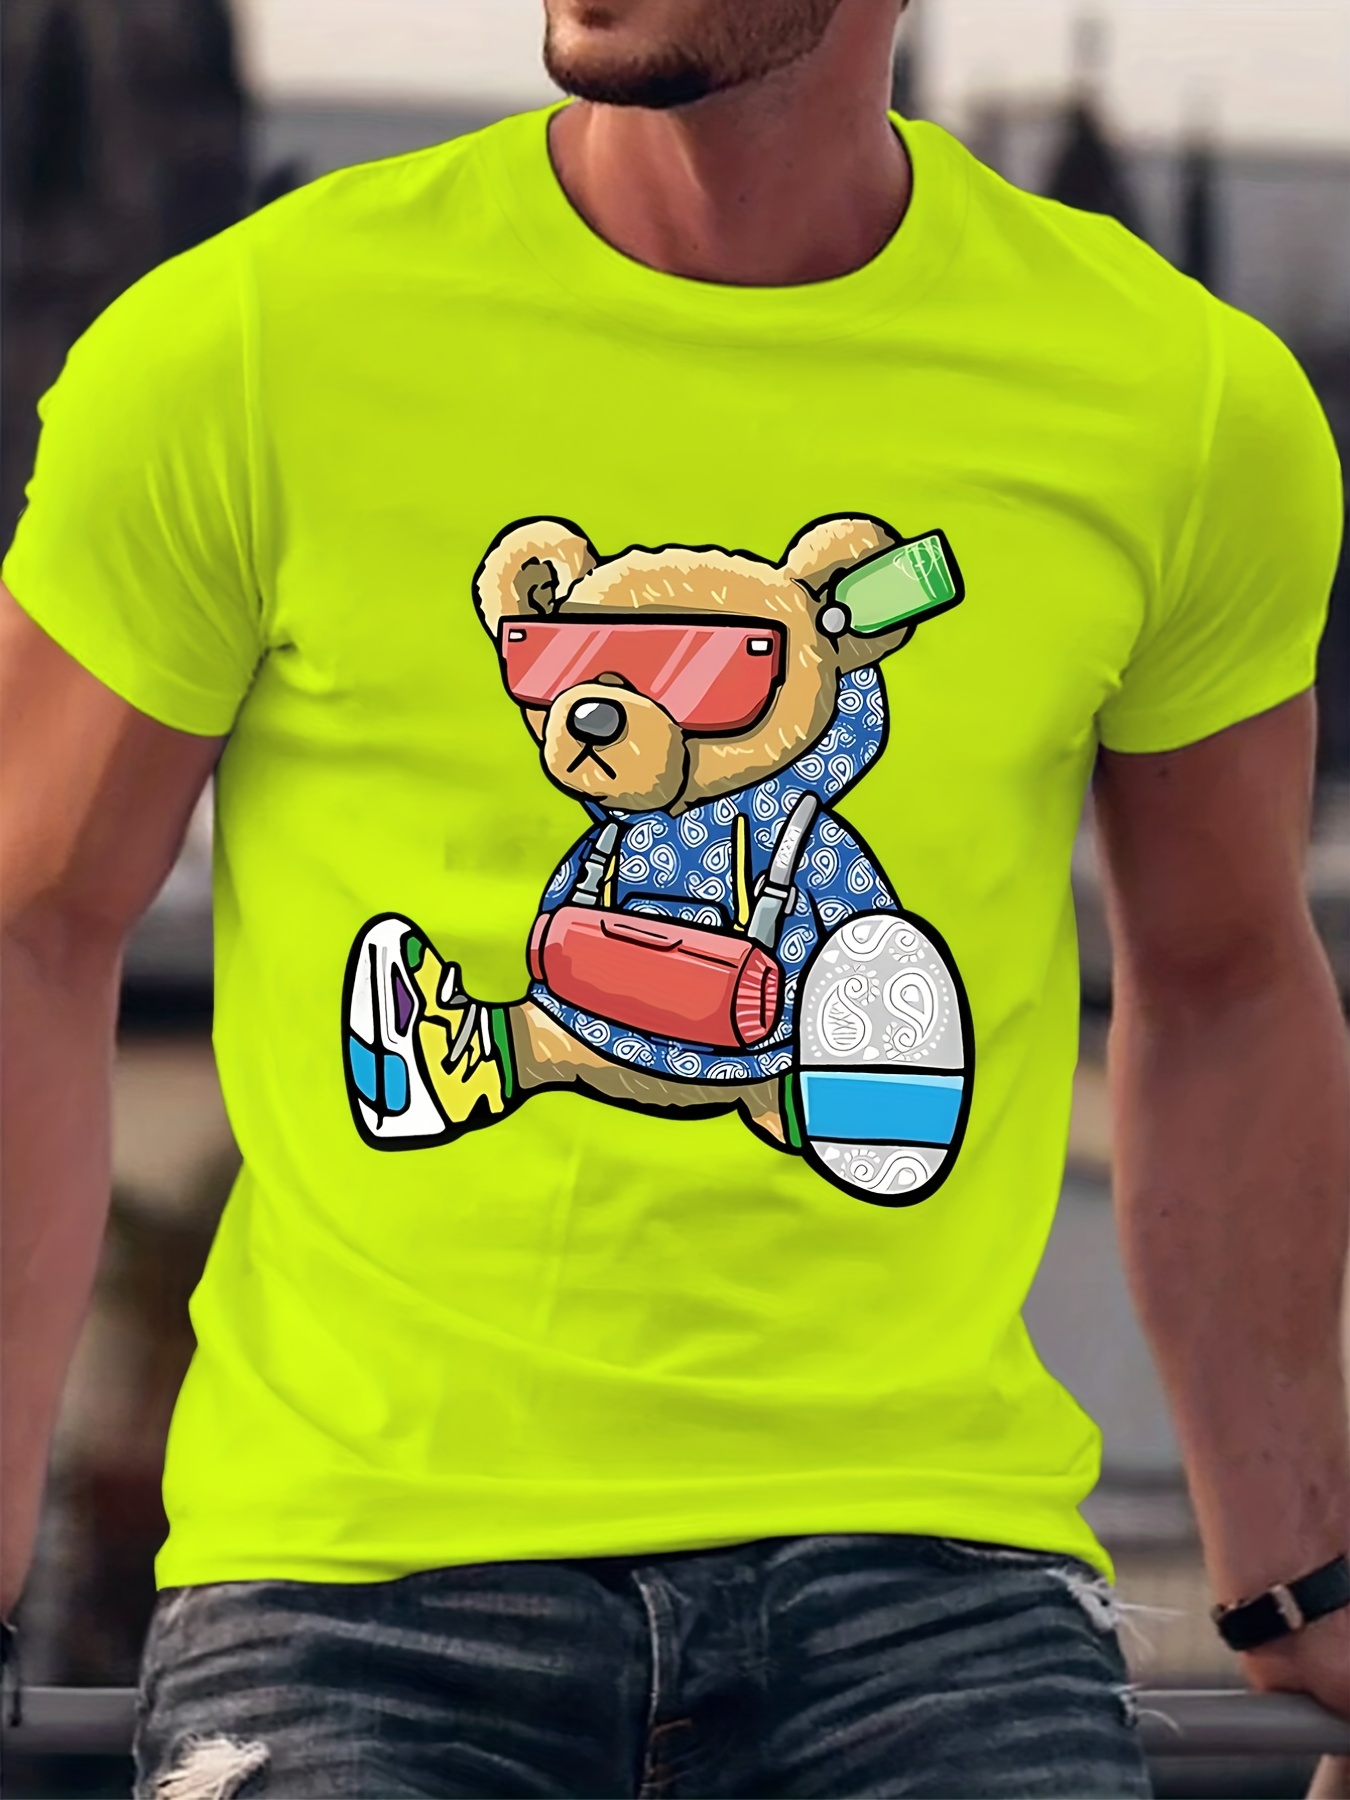 camisa Super bear jogo do urso